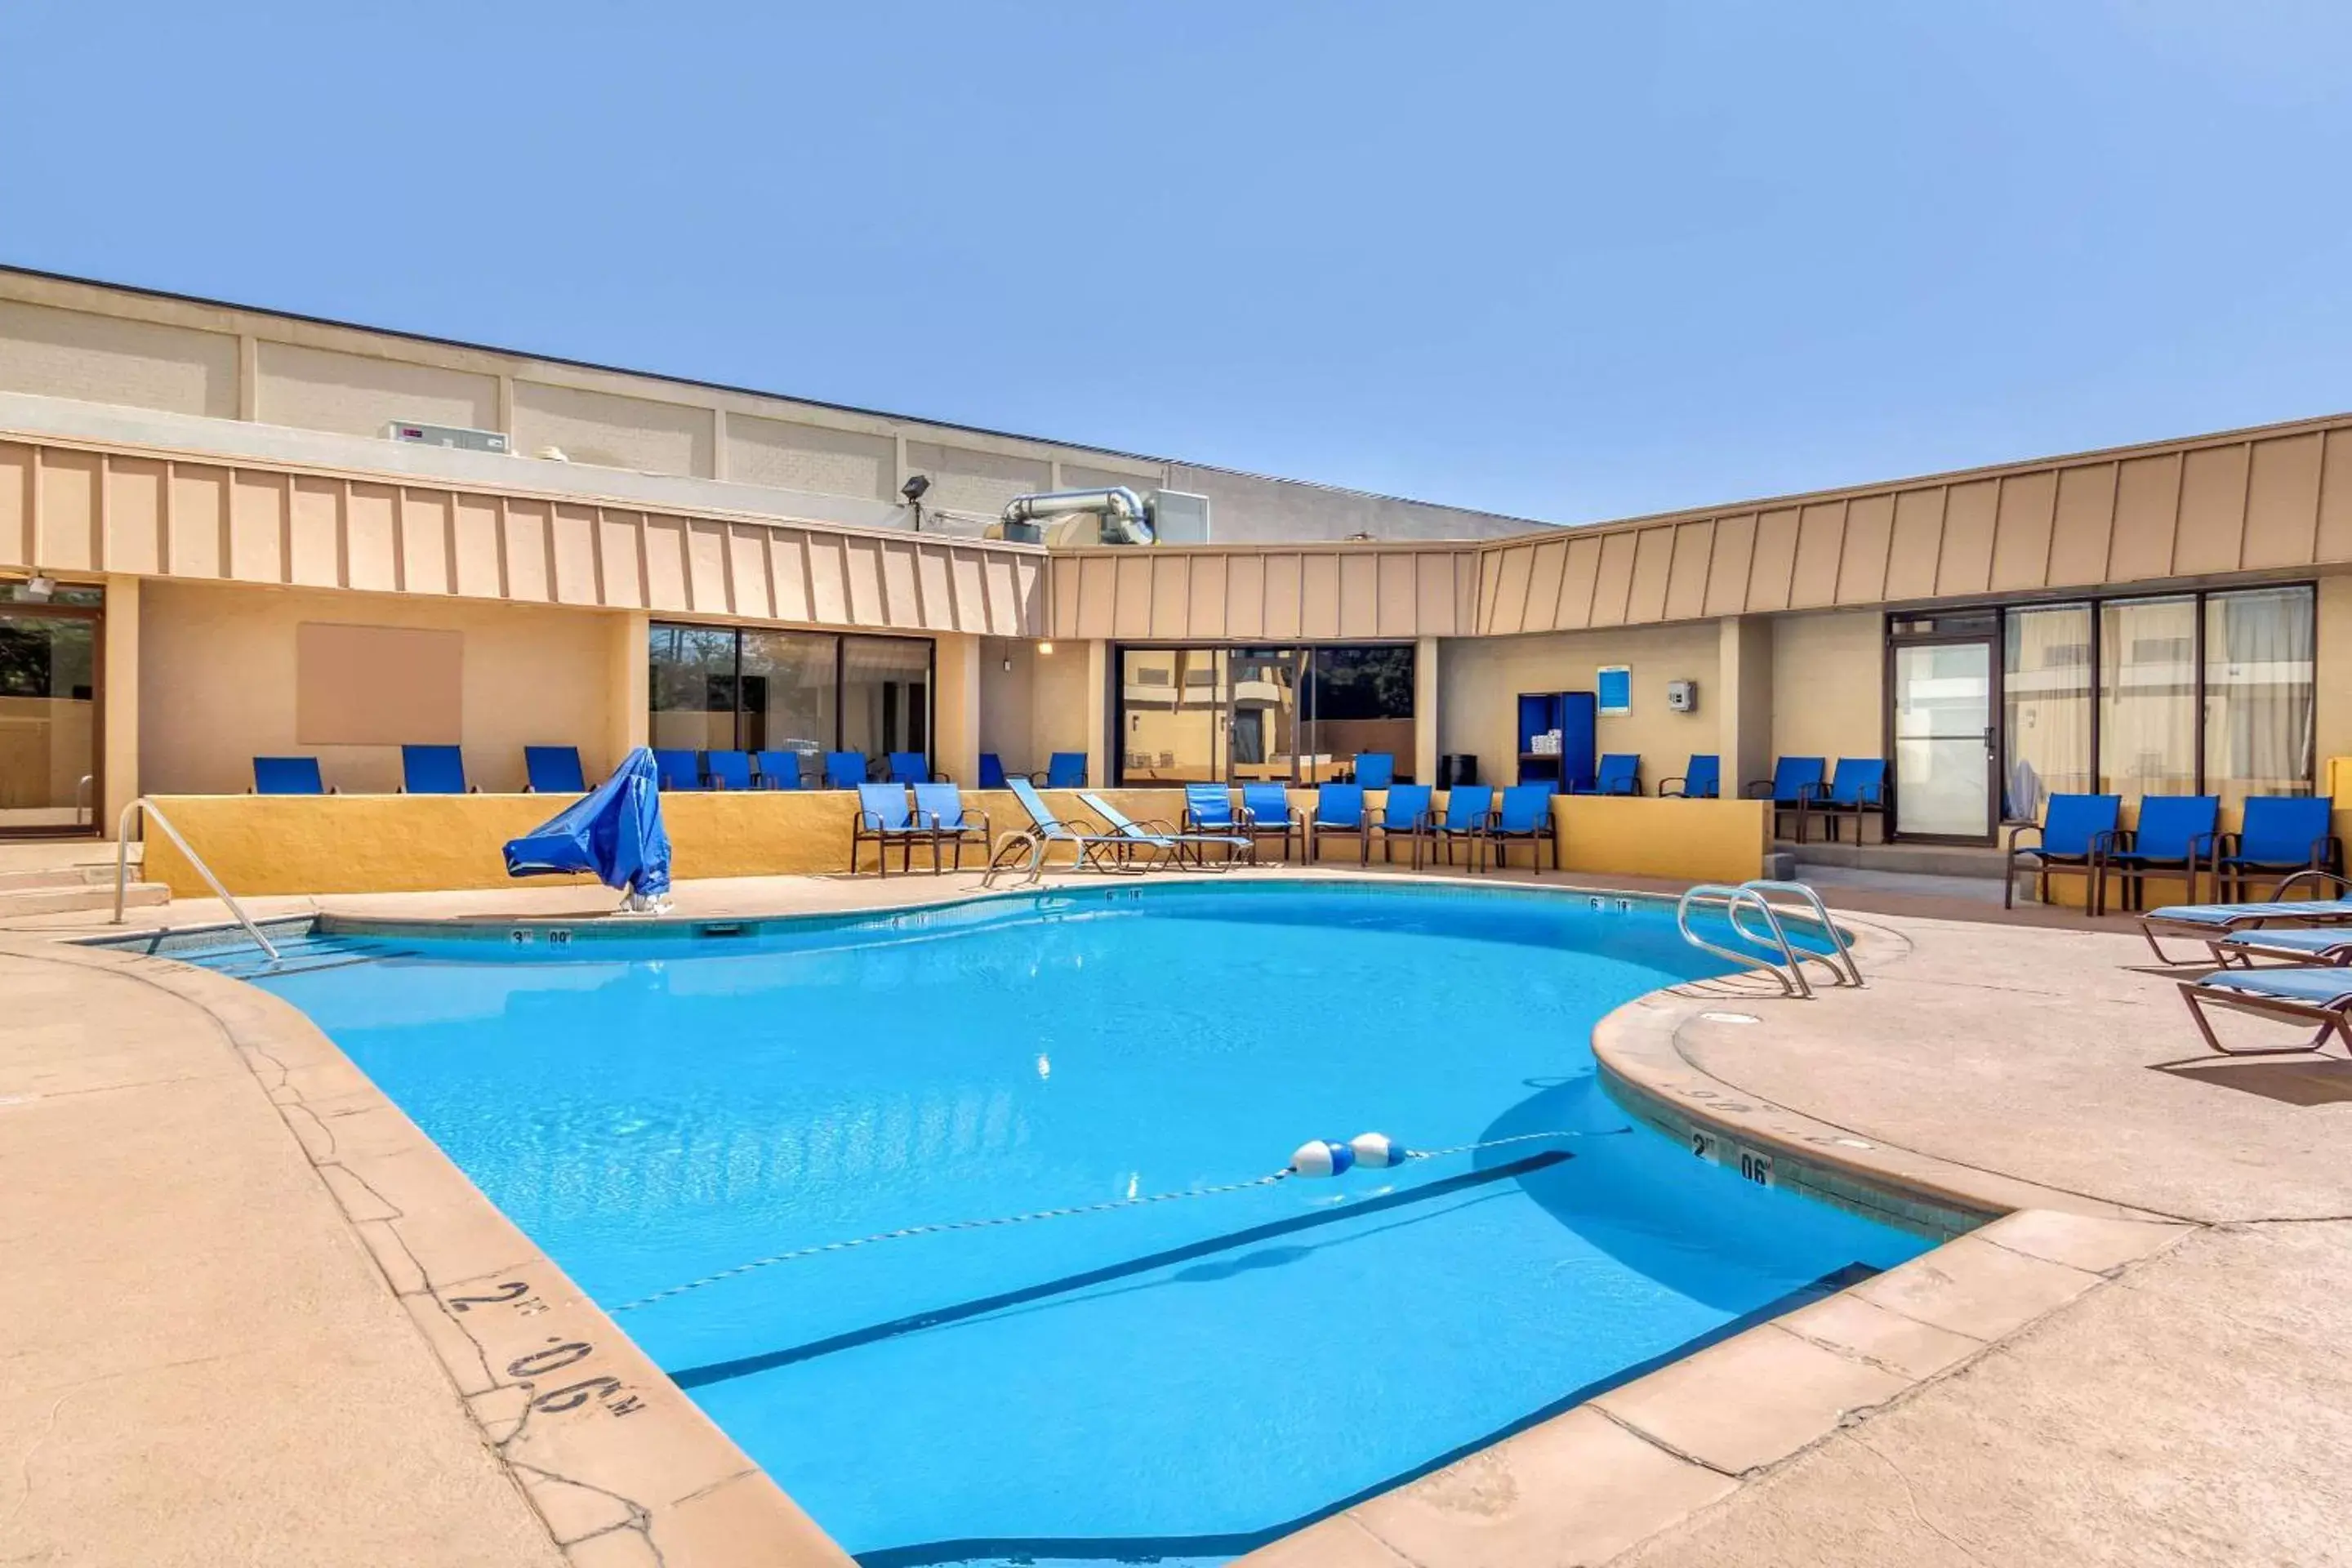 On site, Swimming Pool in Comfort Inn Denver Central